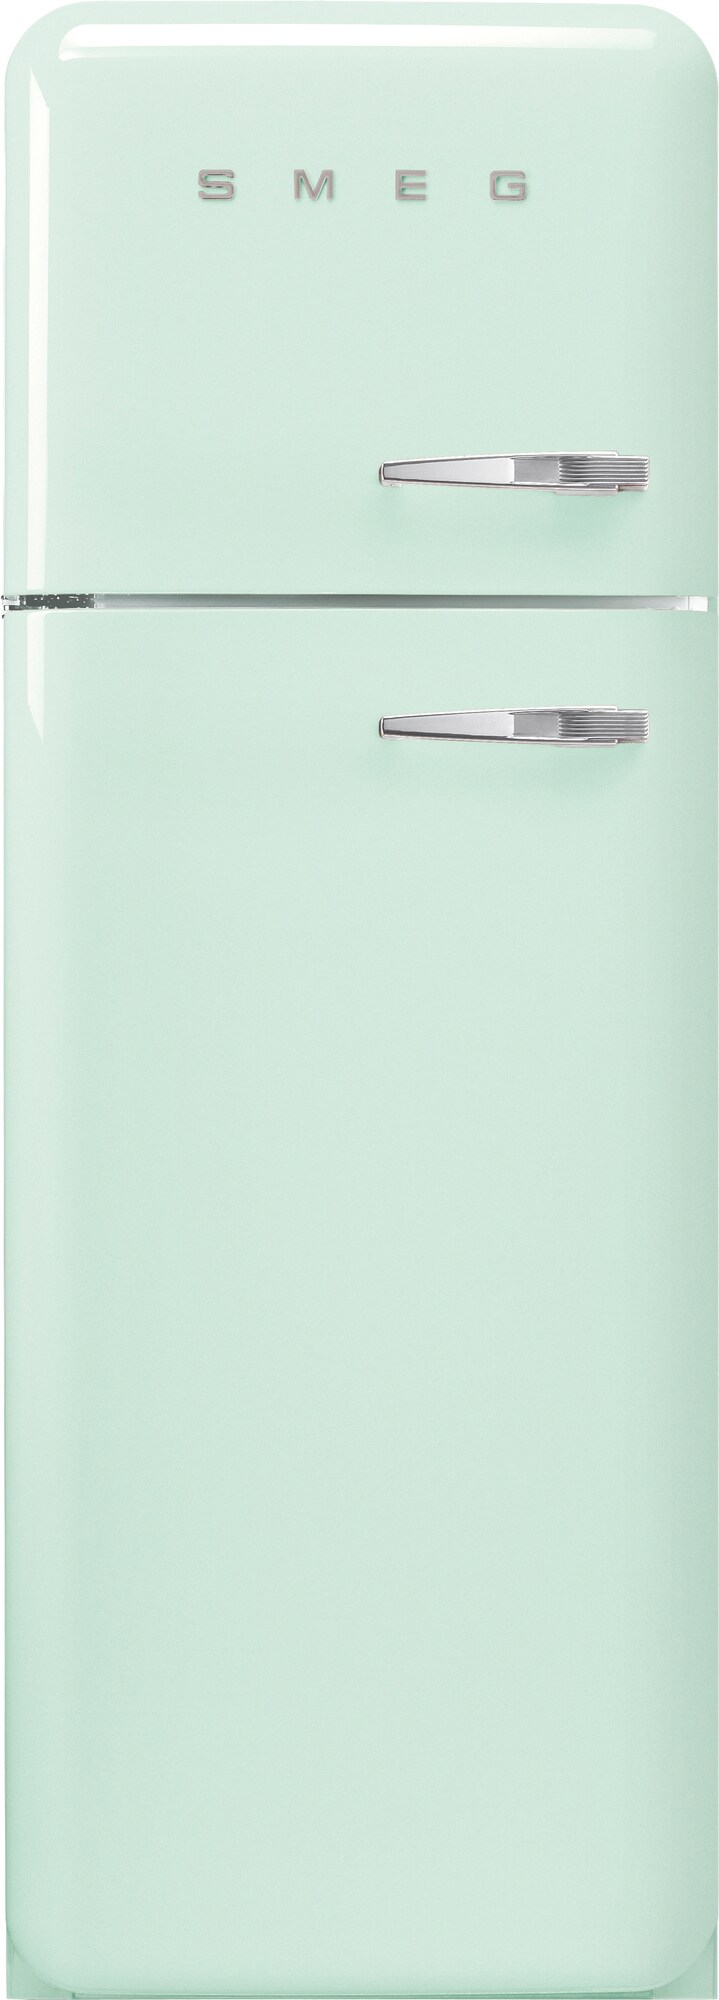 French Doors - Se vårt utbud av kyl-frys med french doors - Elgiganten